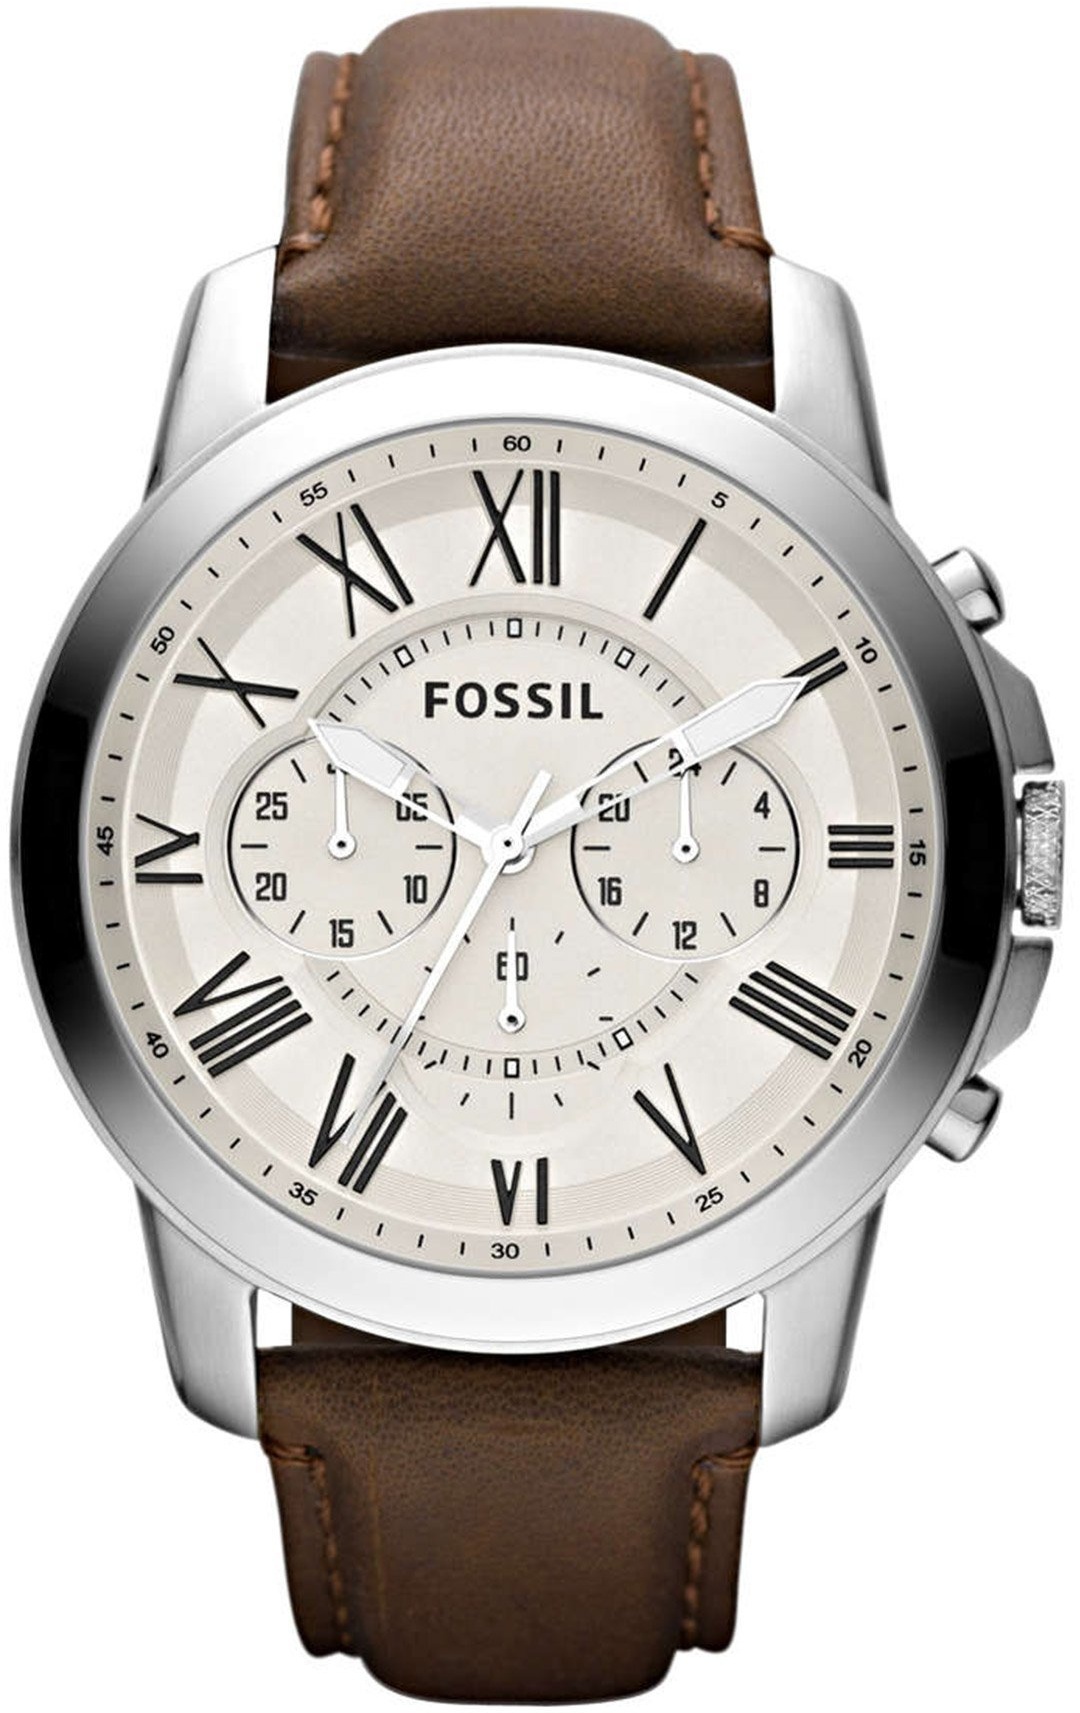 Fossil Herren Armbanduhr Uhr Chronograph Grant FS4735 Leder